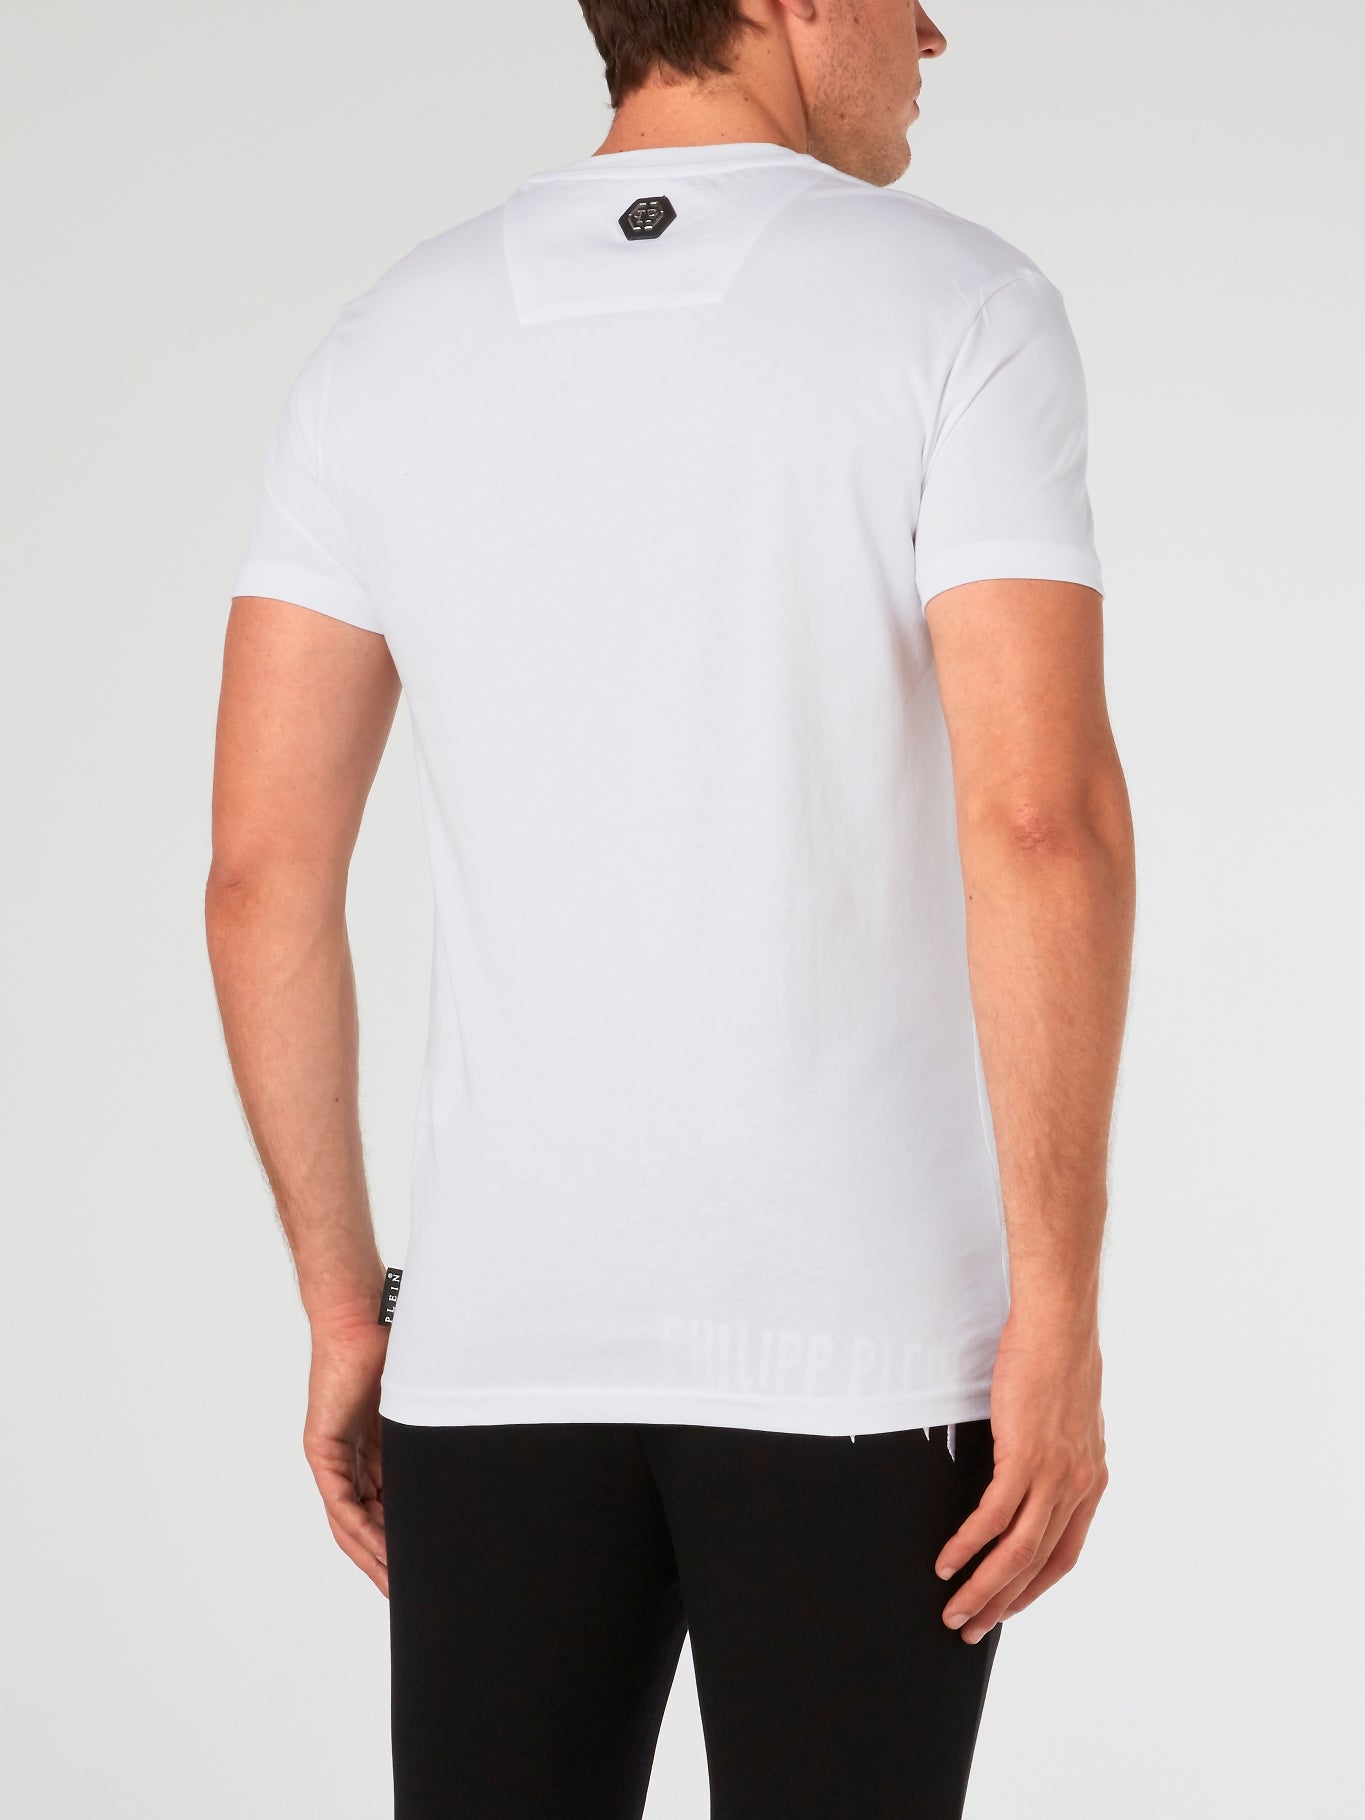 SS Original White Crewneck T-Shirt